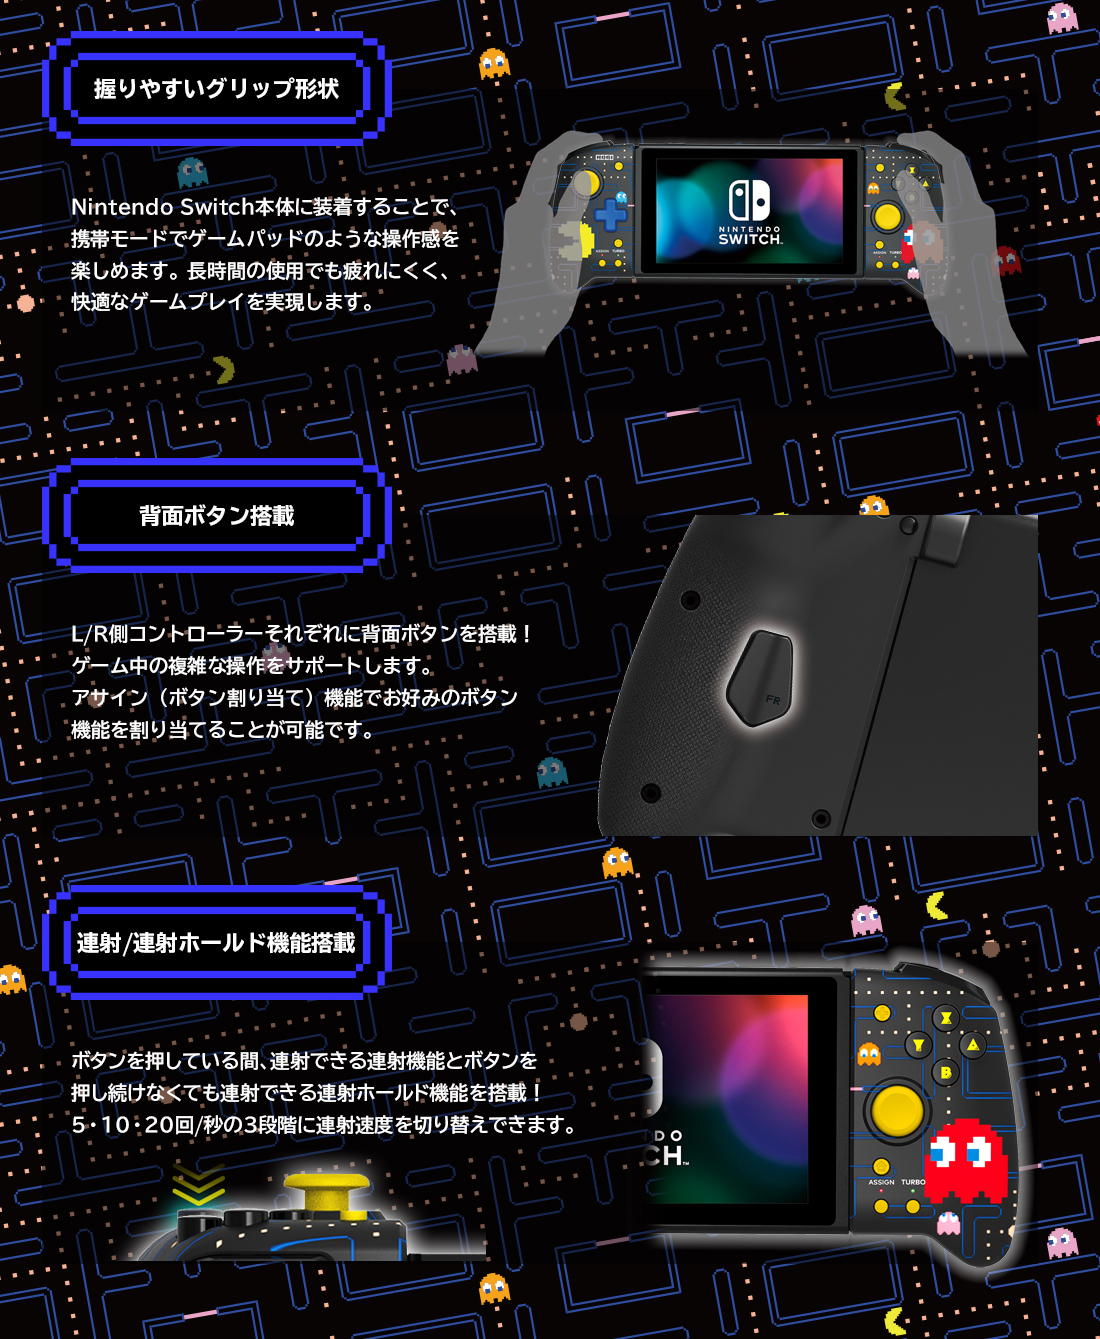 株式会社 HORI | グリップコントローラー for Nintendo Switch PAC-MAN